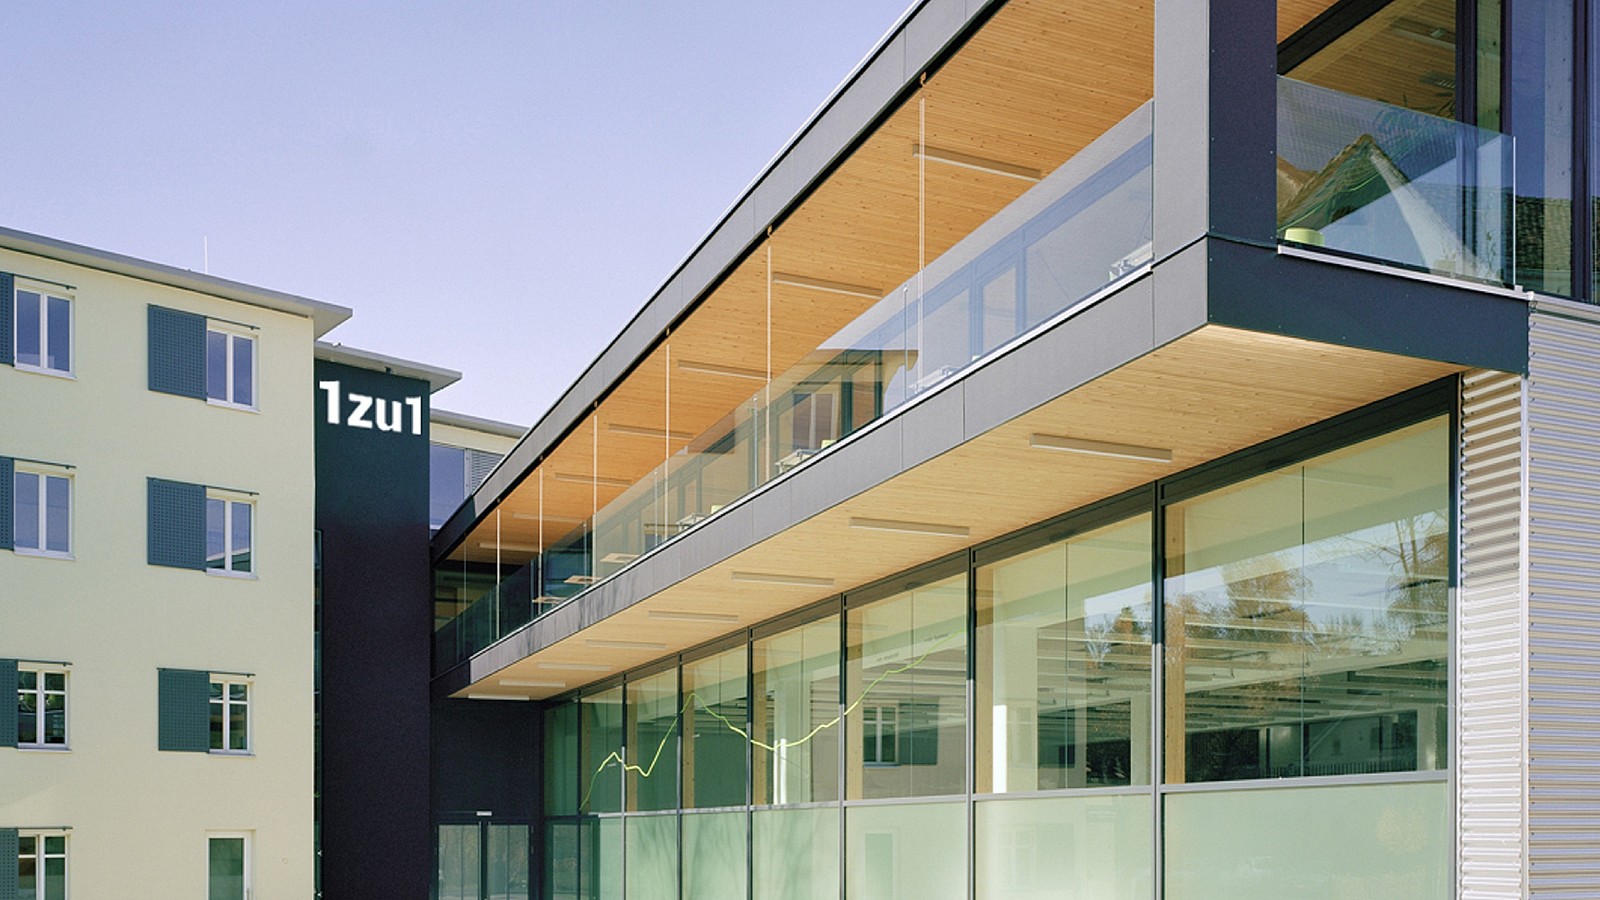 Das Bild zeigt die Frontansicht des 1zu1 Firmensitz in Dornbirn, Vorarlberg.